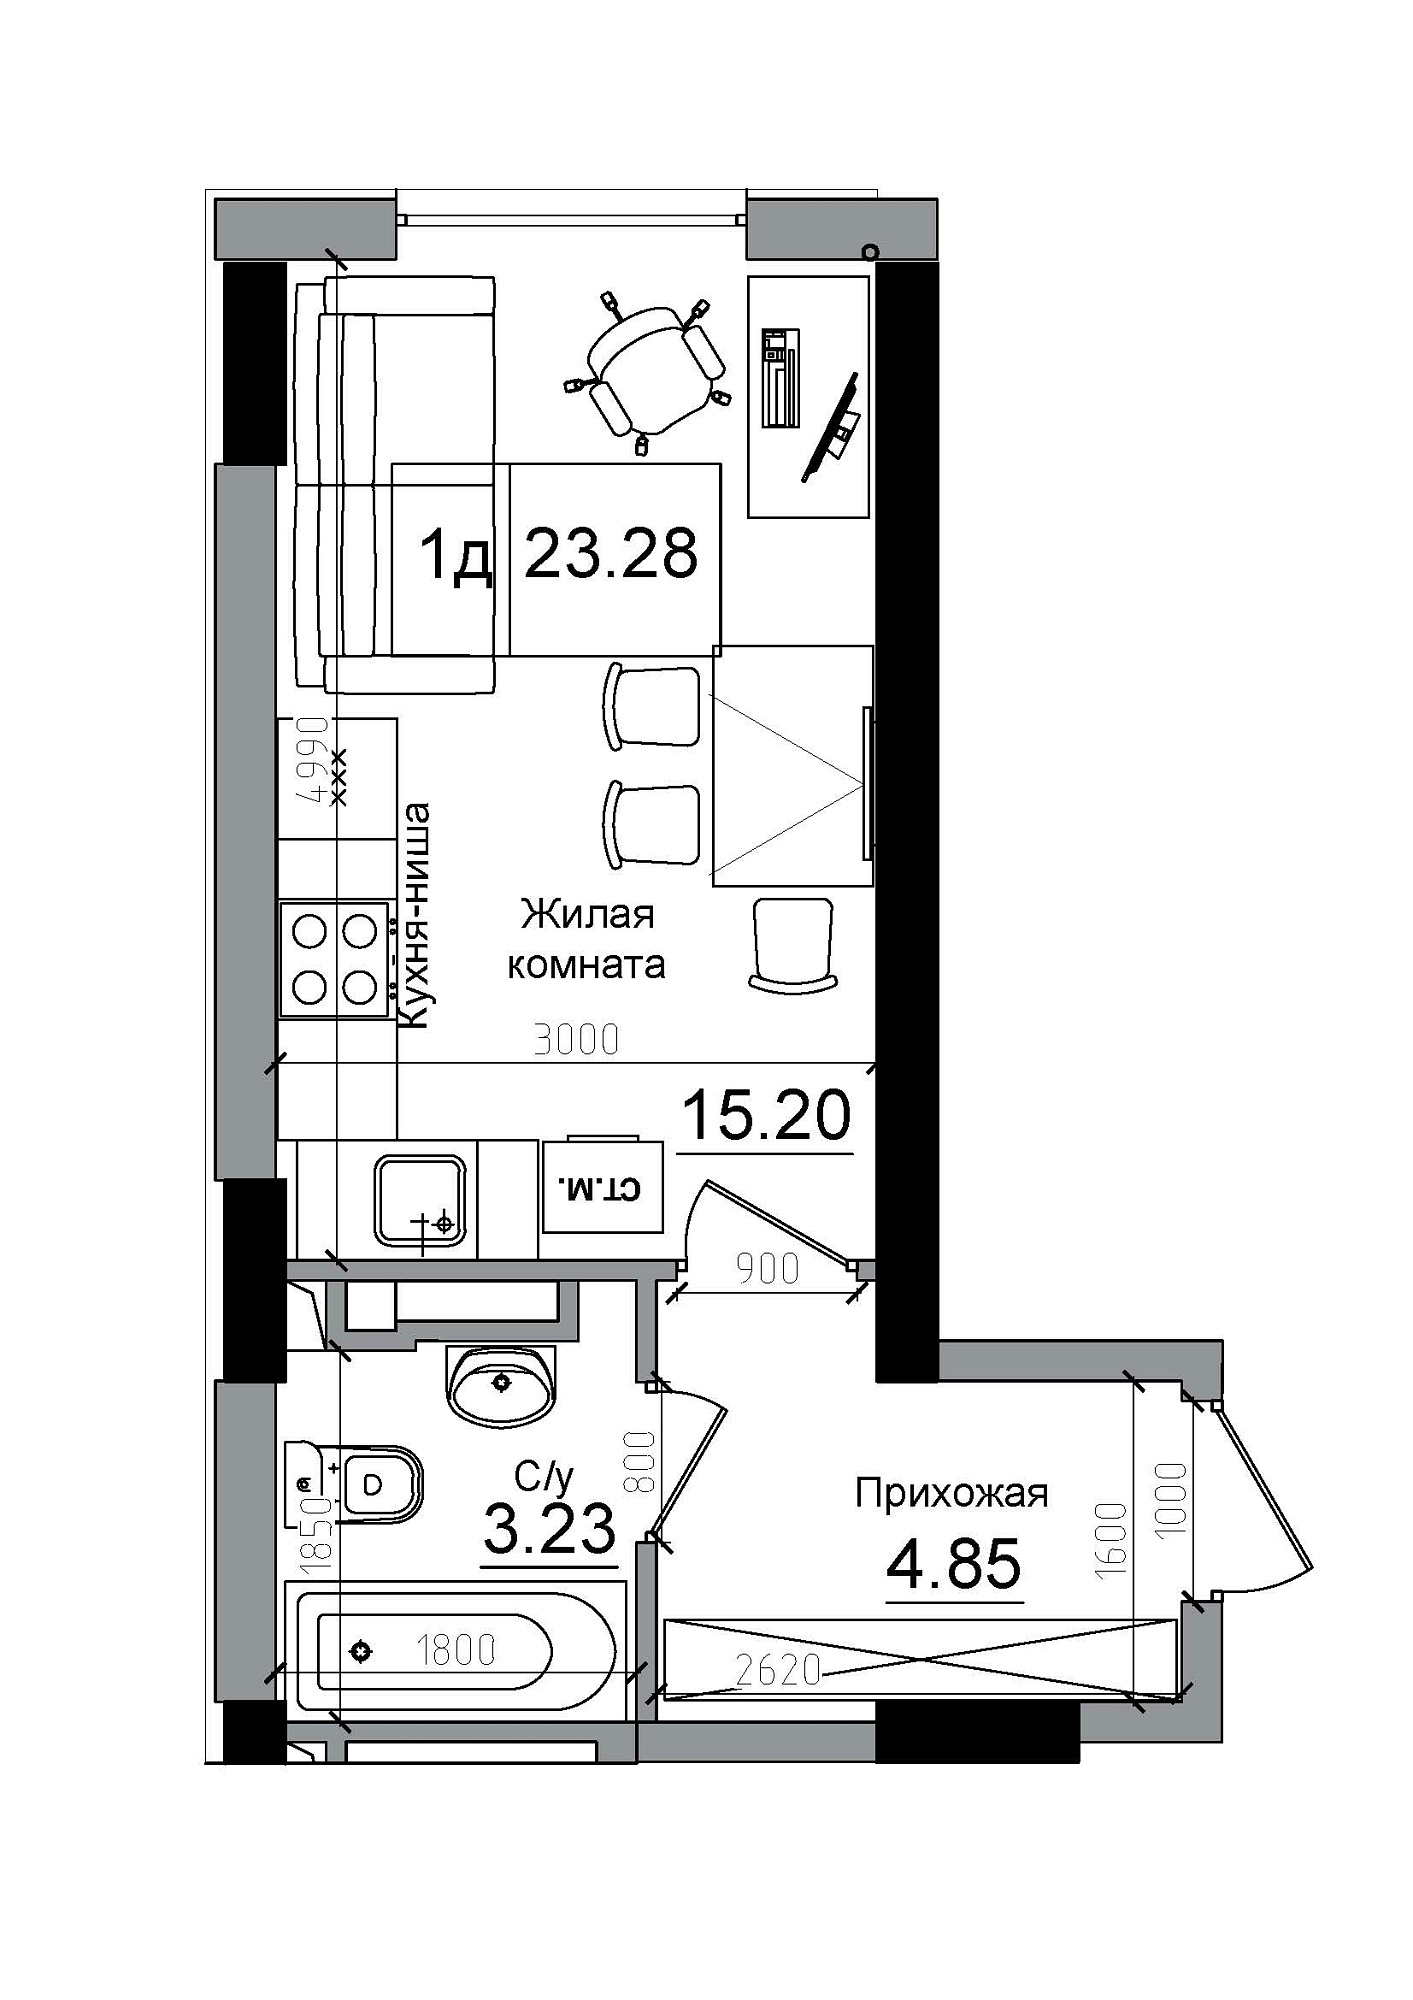 Планування Smart-квартира площею 23.28м2, AB-12-04/00005.